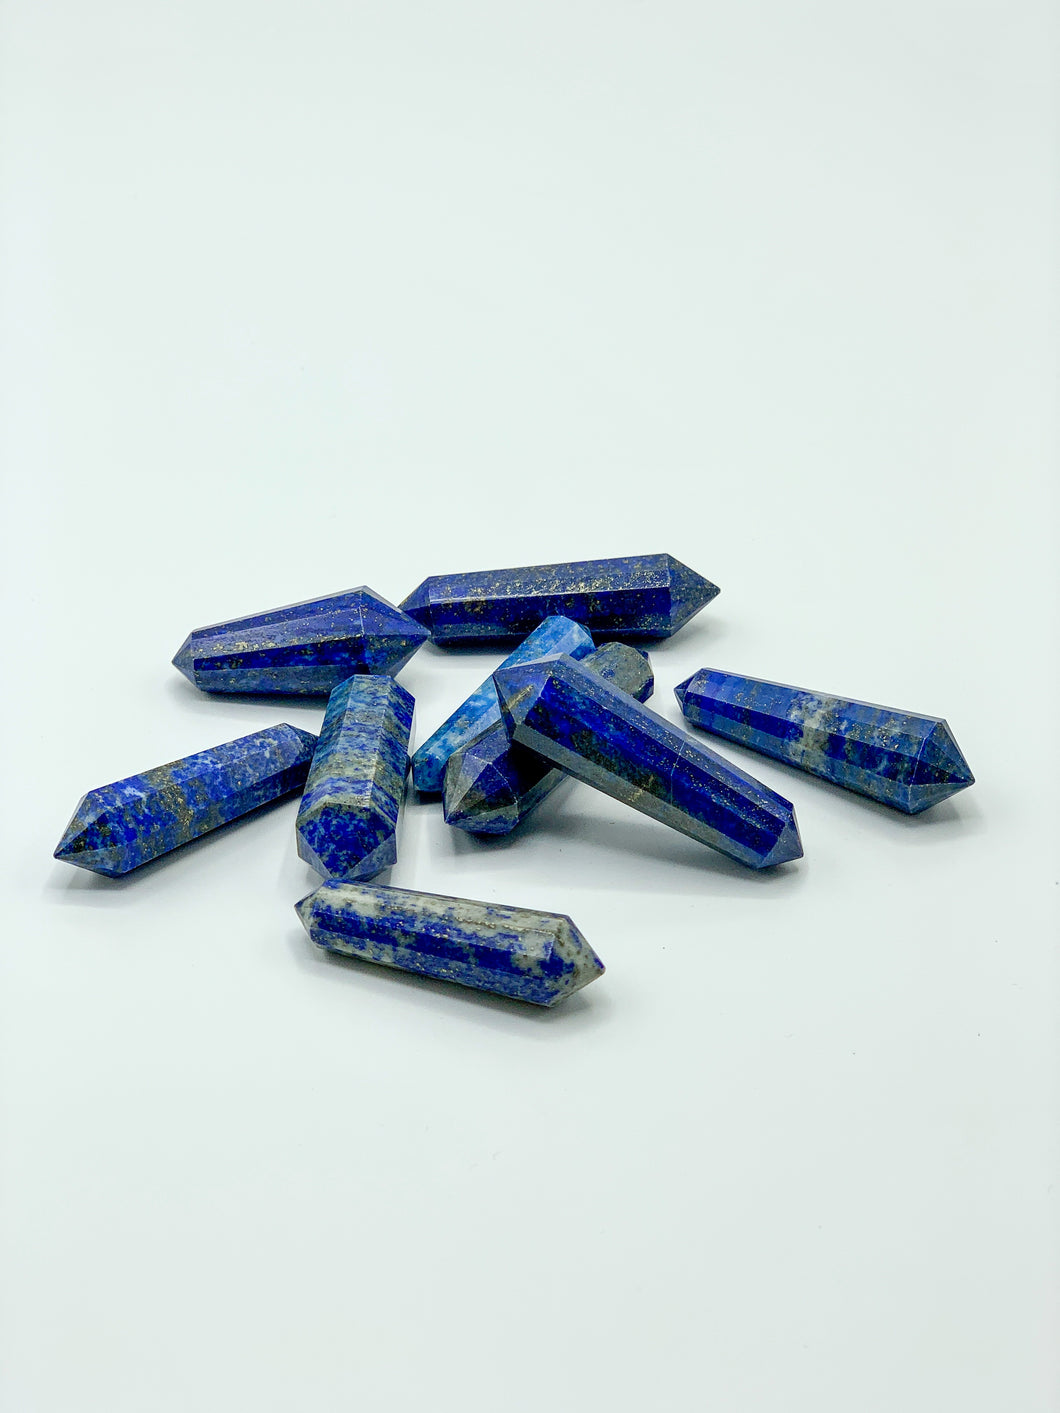 Small lapis lazuli wands